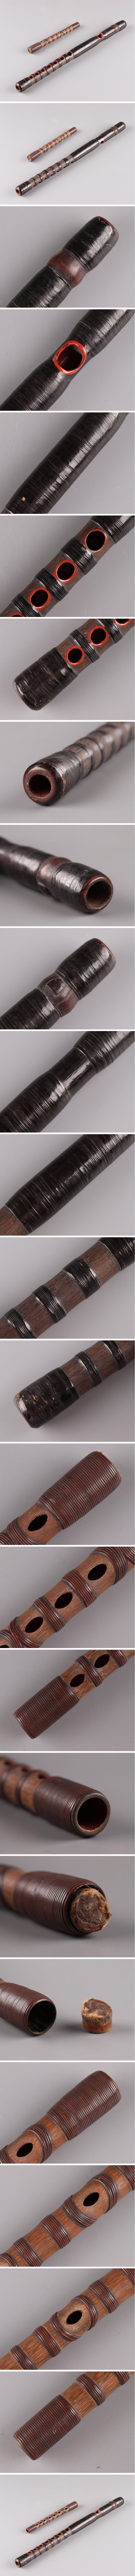 【純正直売】古美術 時代和器 竜笛 能管 篳篥 二点 時代物 極上品 初だし品 4036 龍笛、竜笛